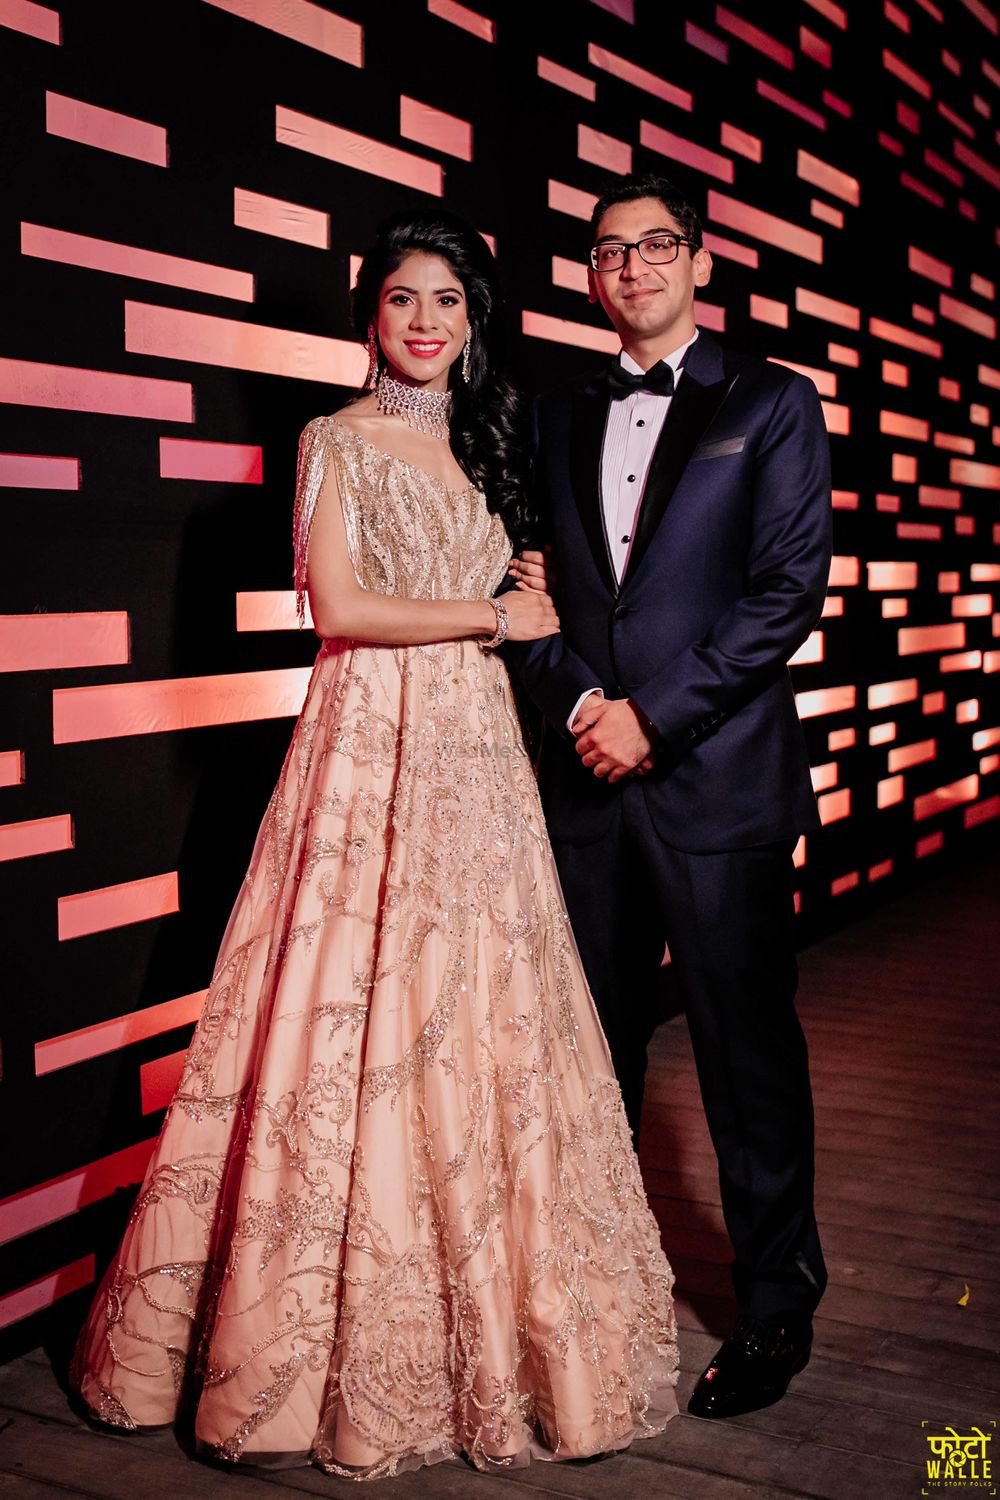 Photo of Sangeet gown couple portrait shot